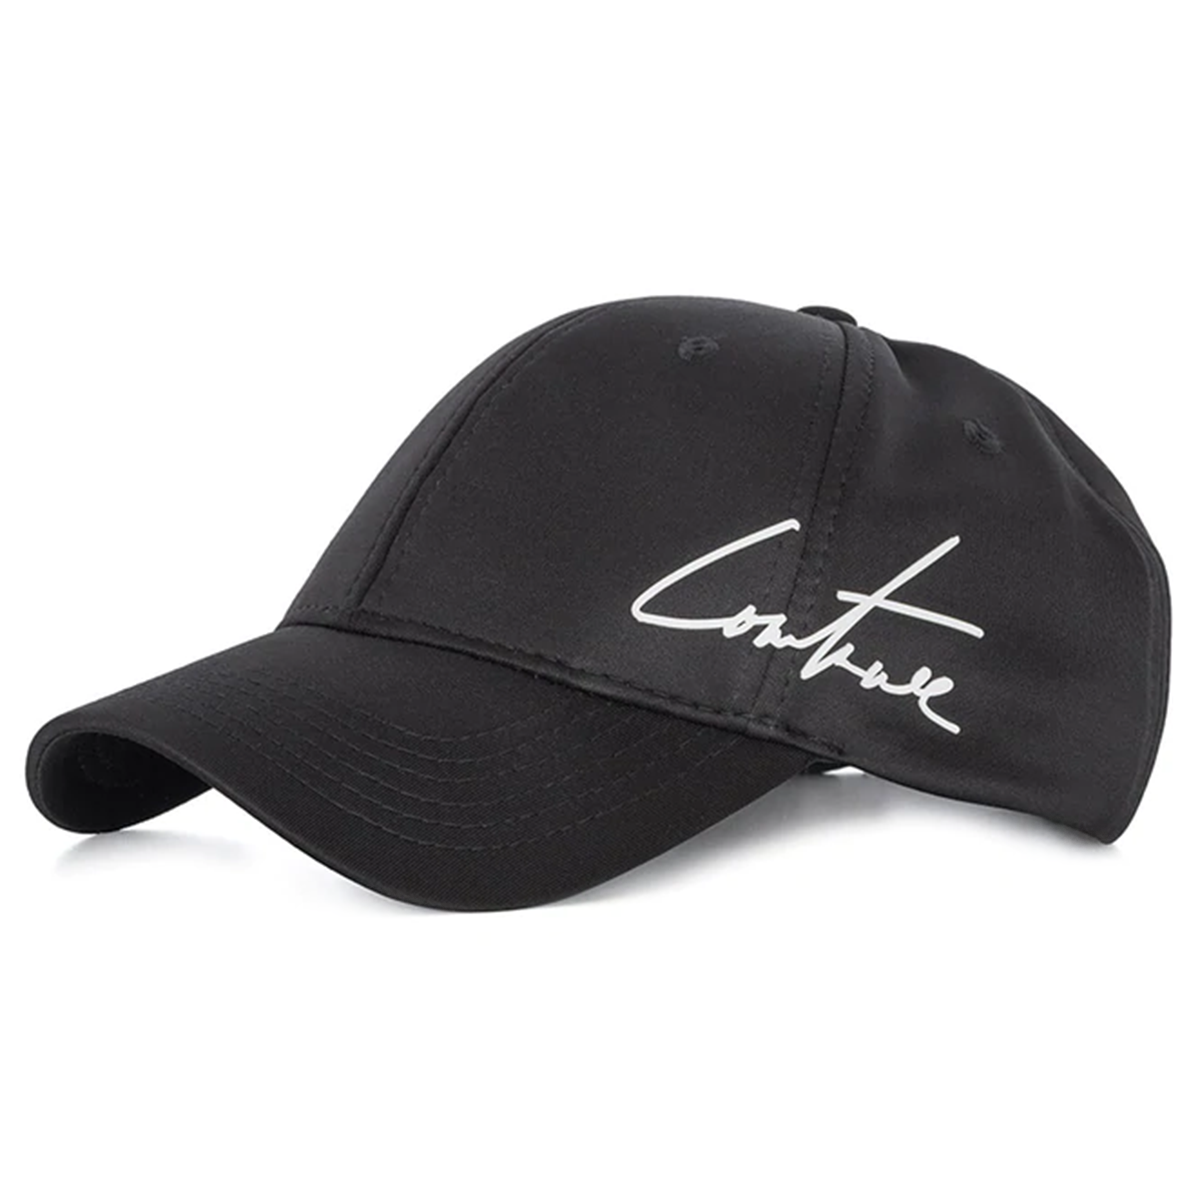 couture-club-golf-sports-cap-tccm1990-black